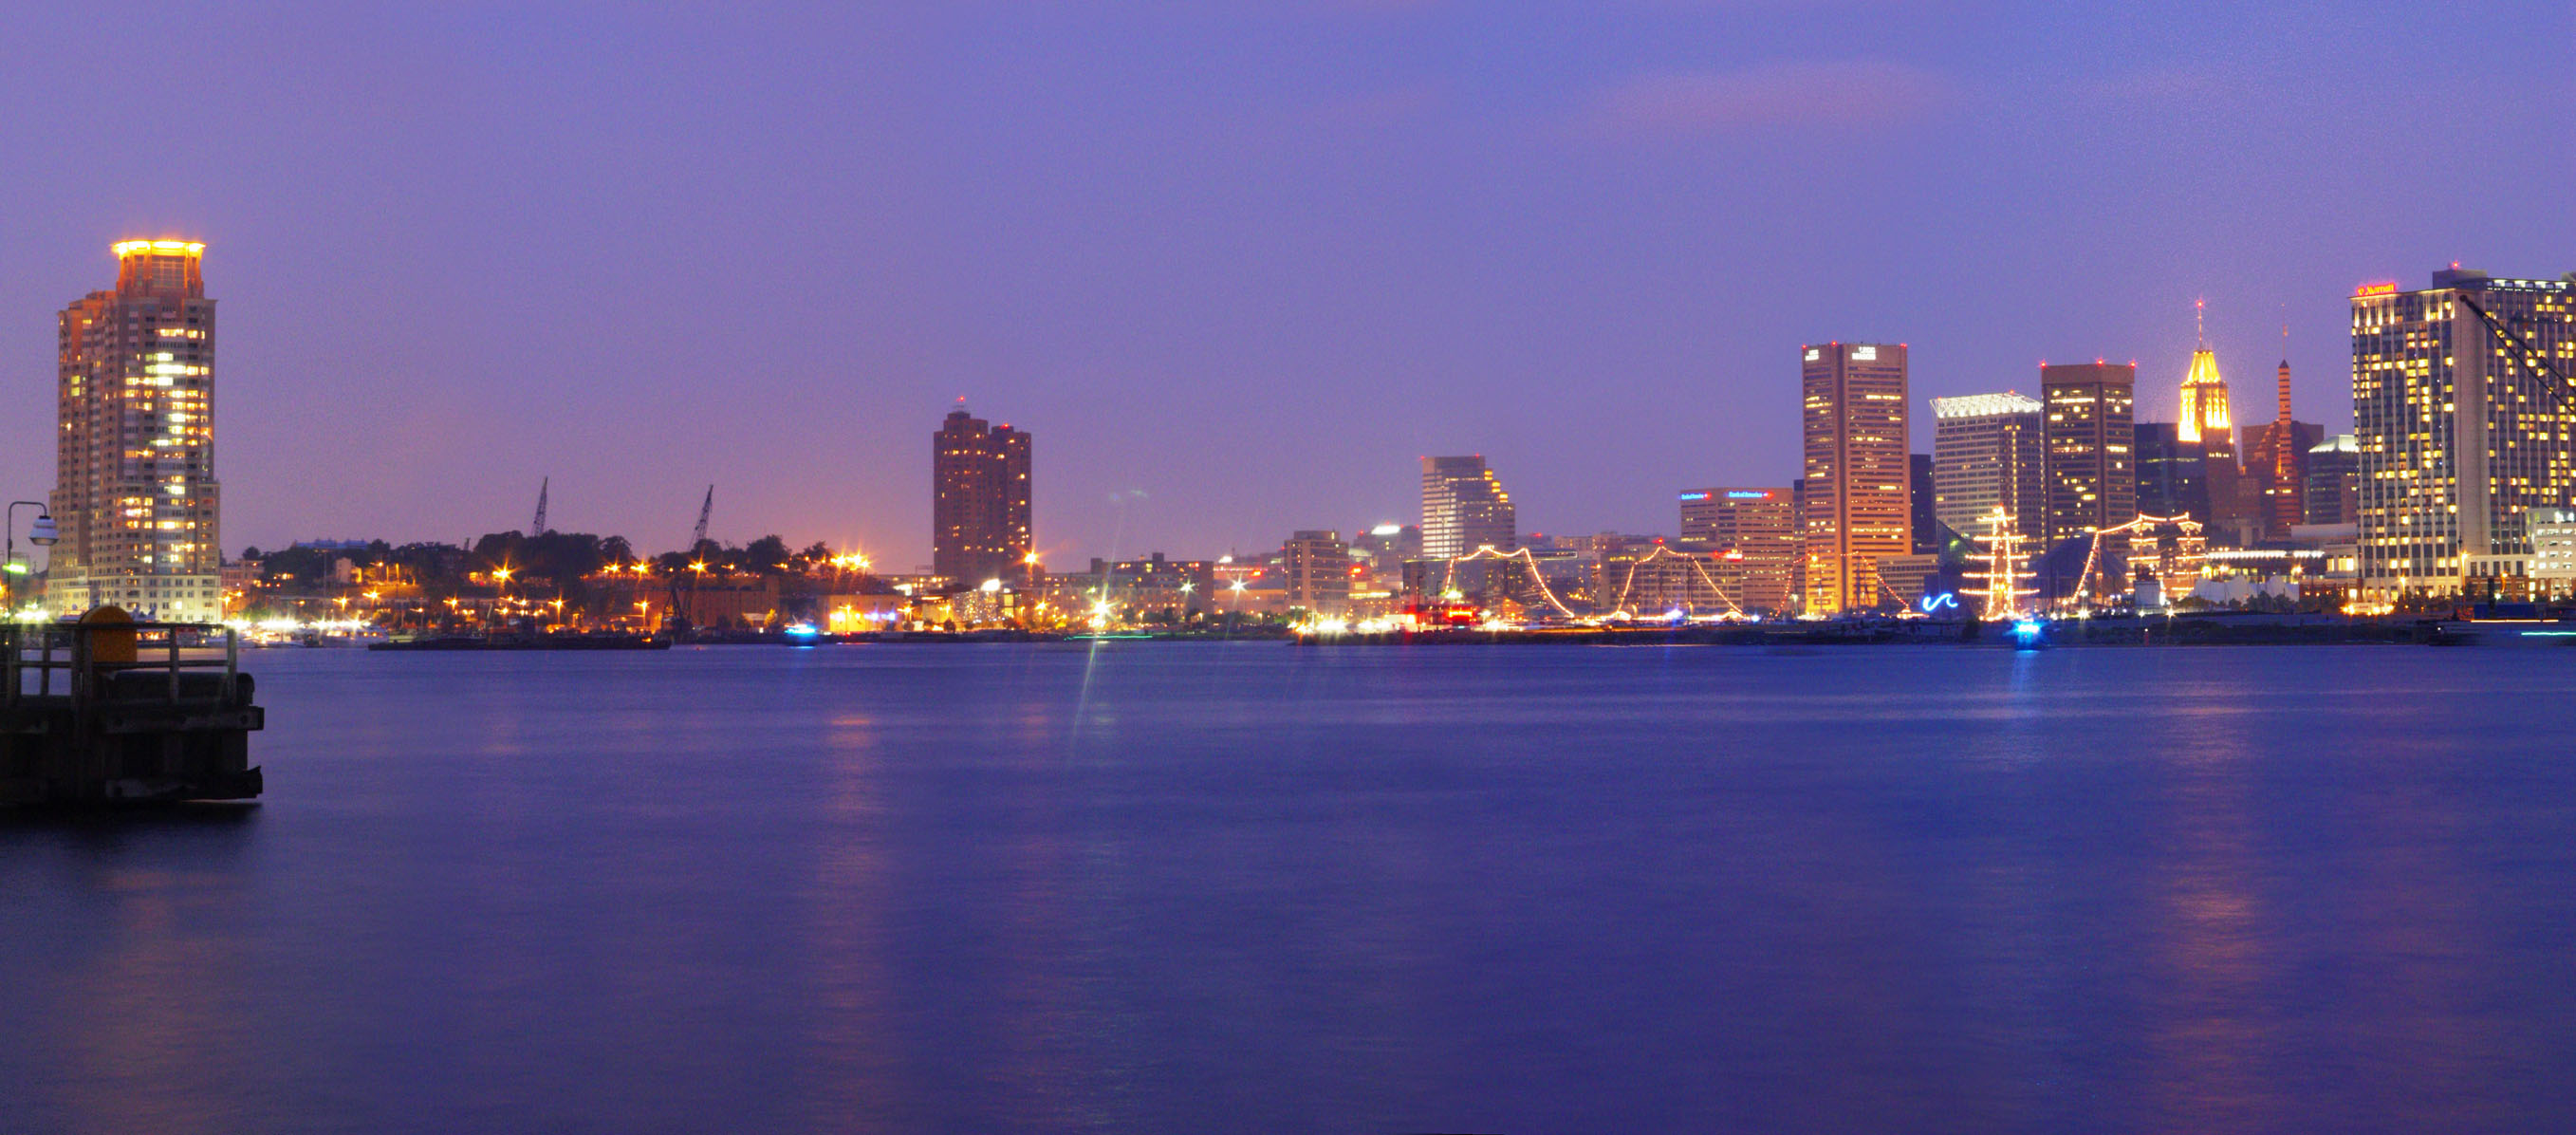 Baltimore Inner Harbor, dusk